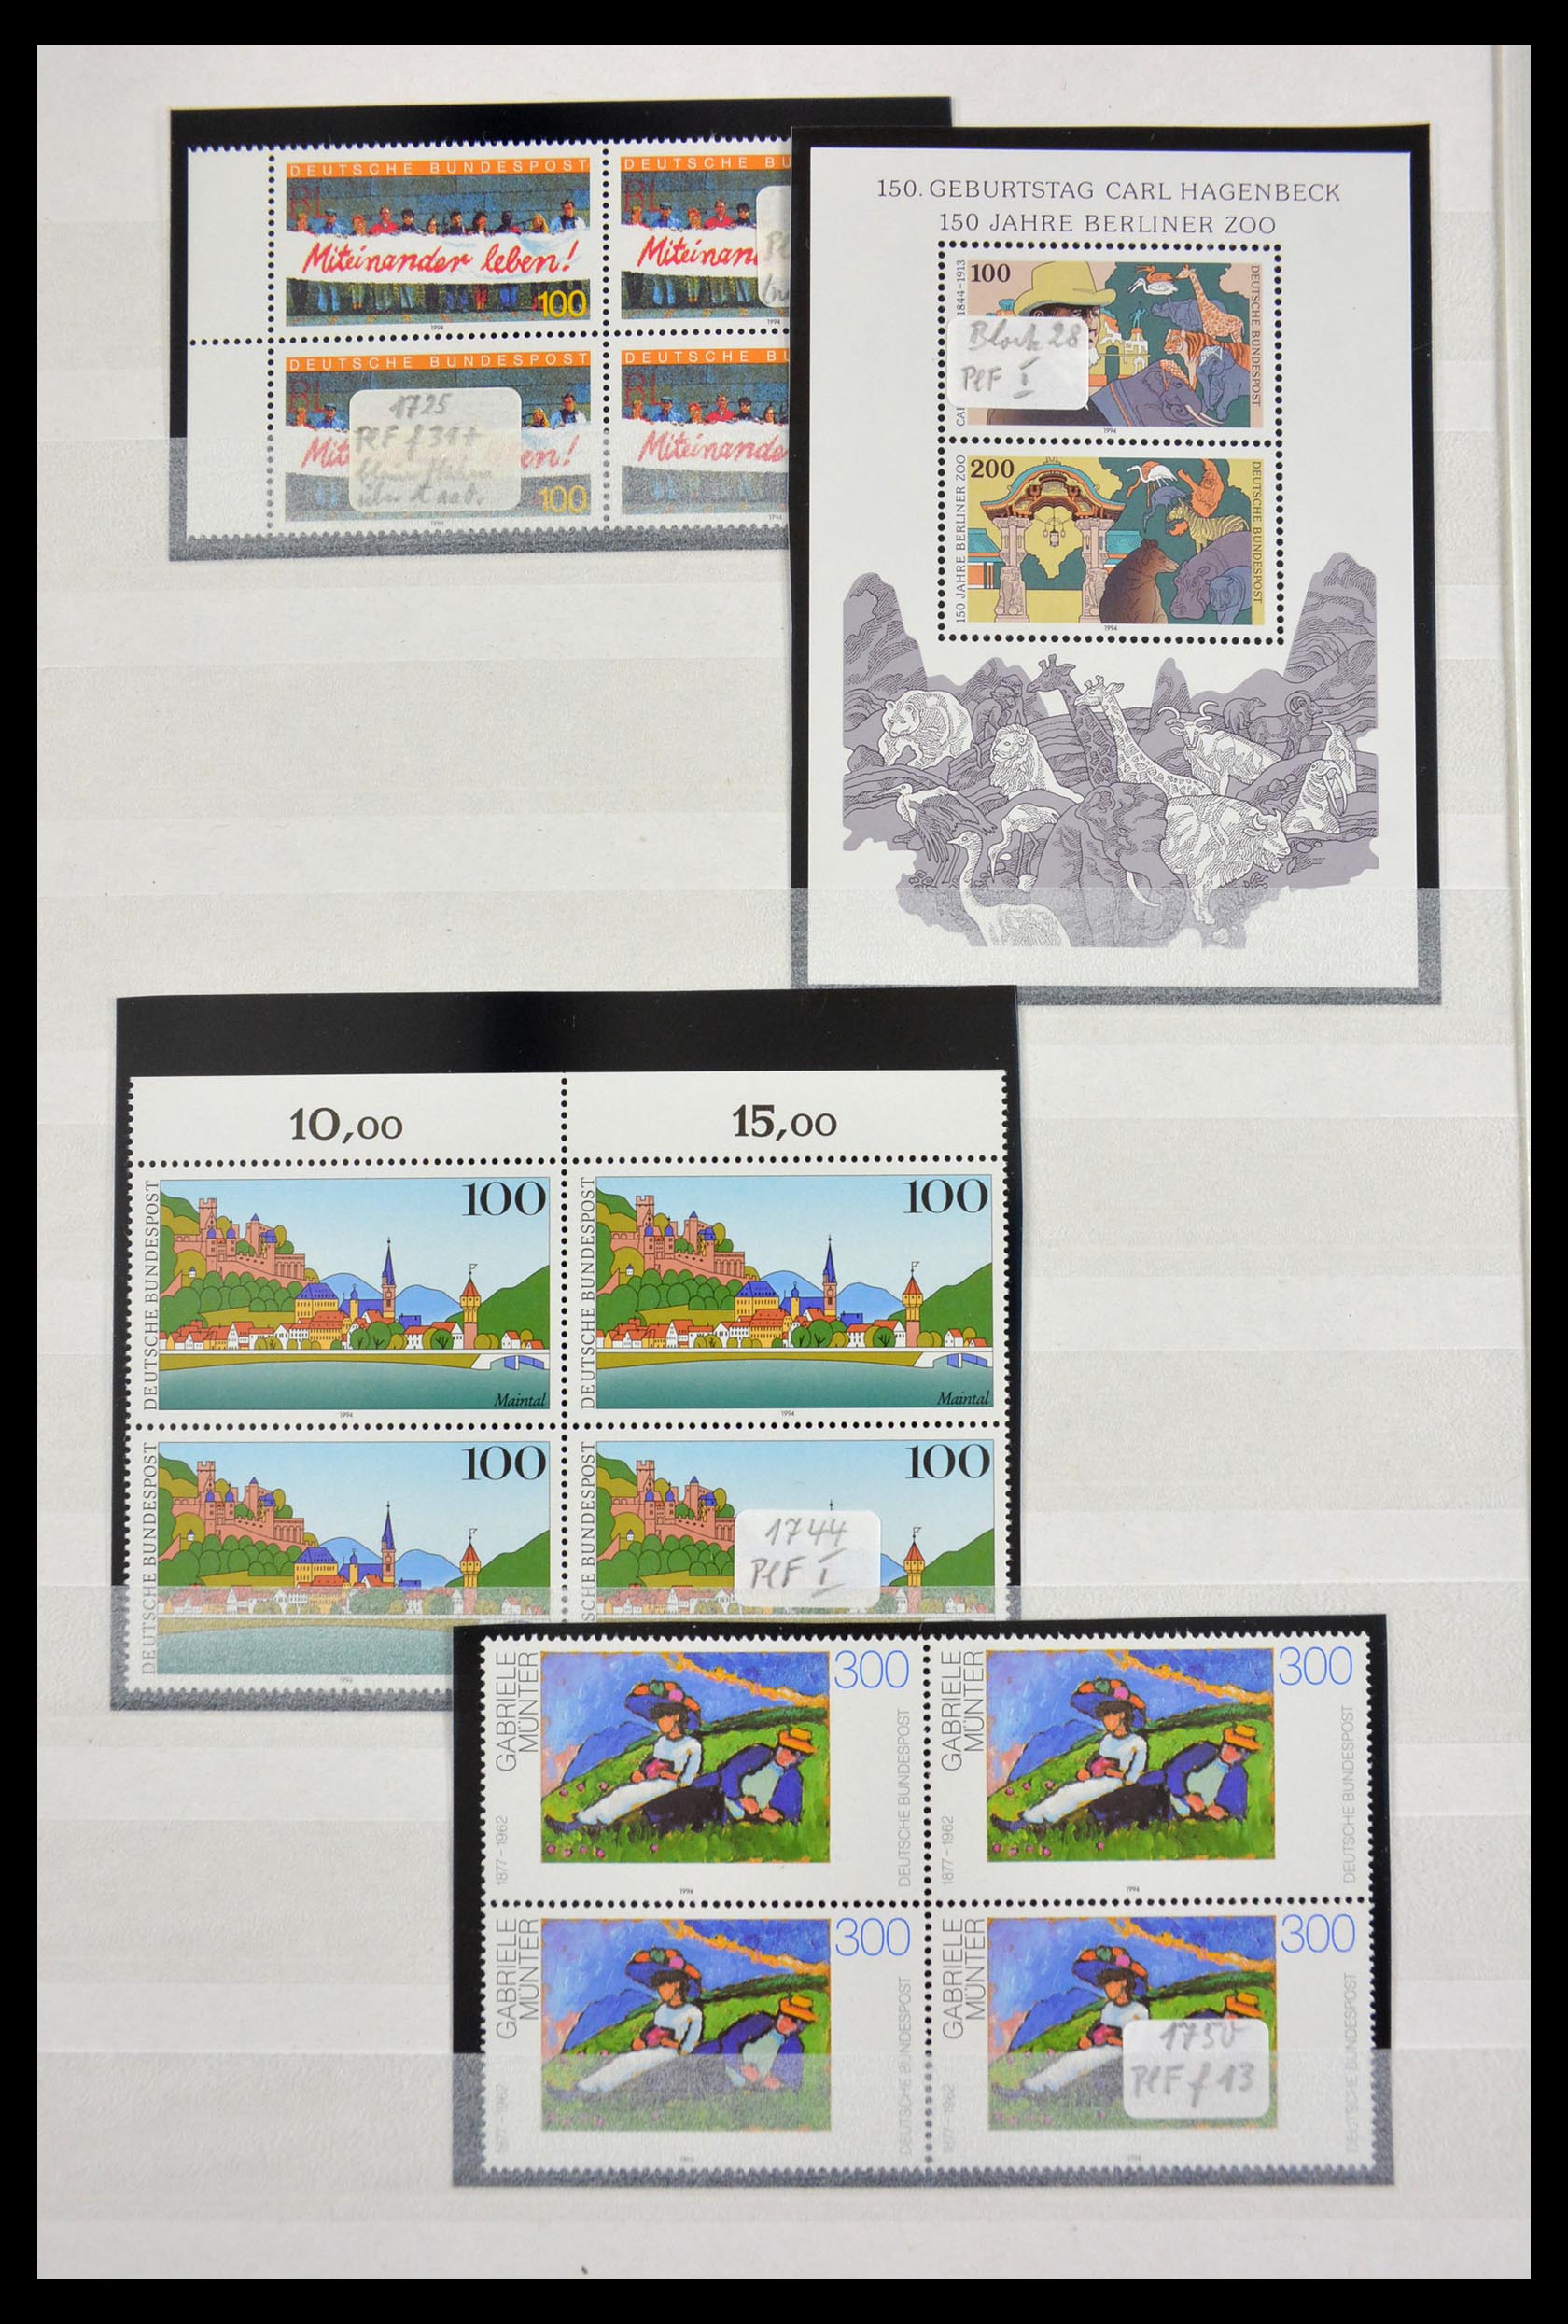 29491 058 - 29491 Bundespost plateflaws 1957-1994.